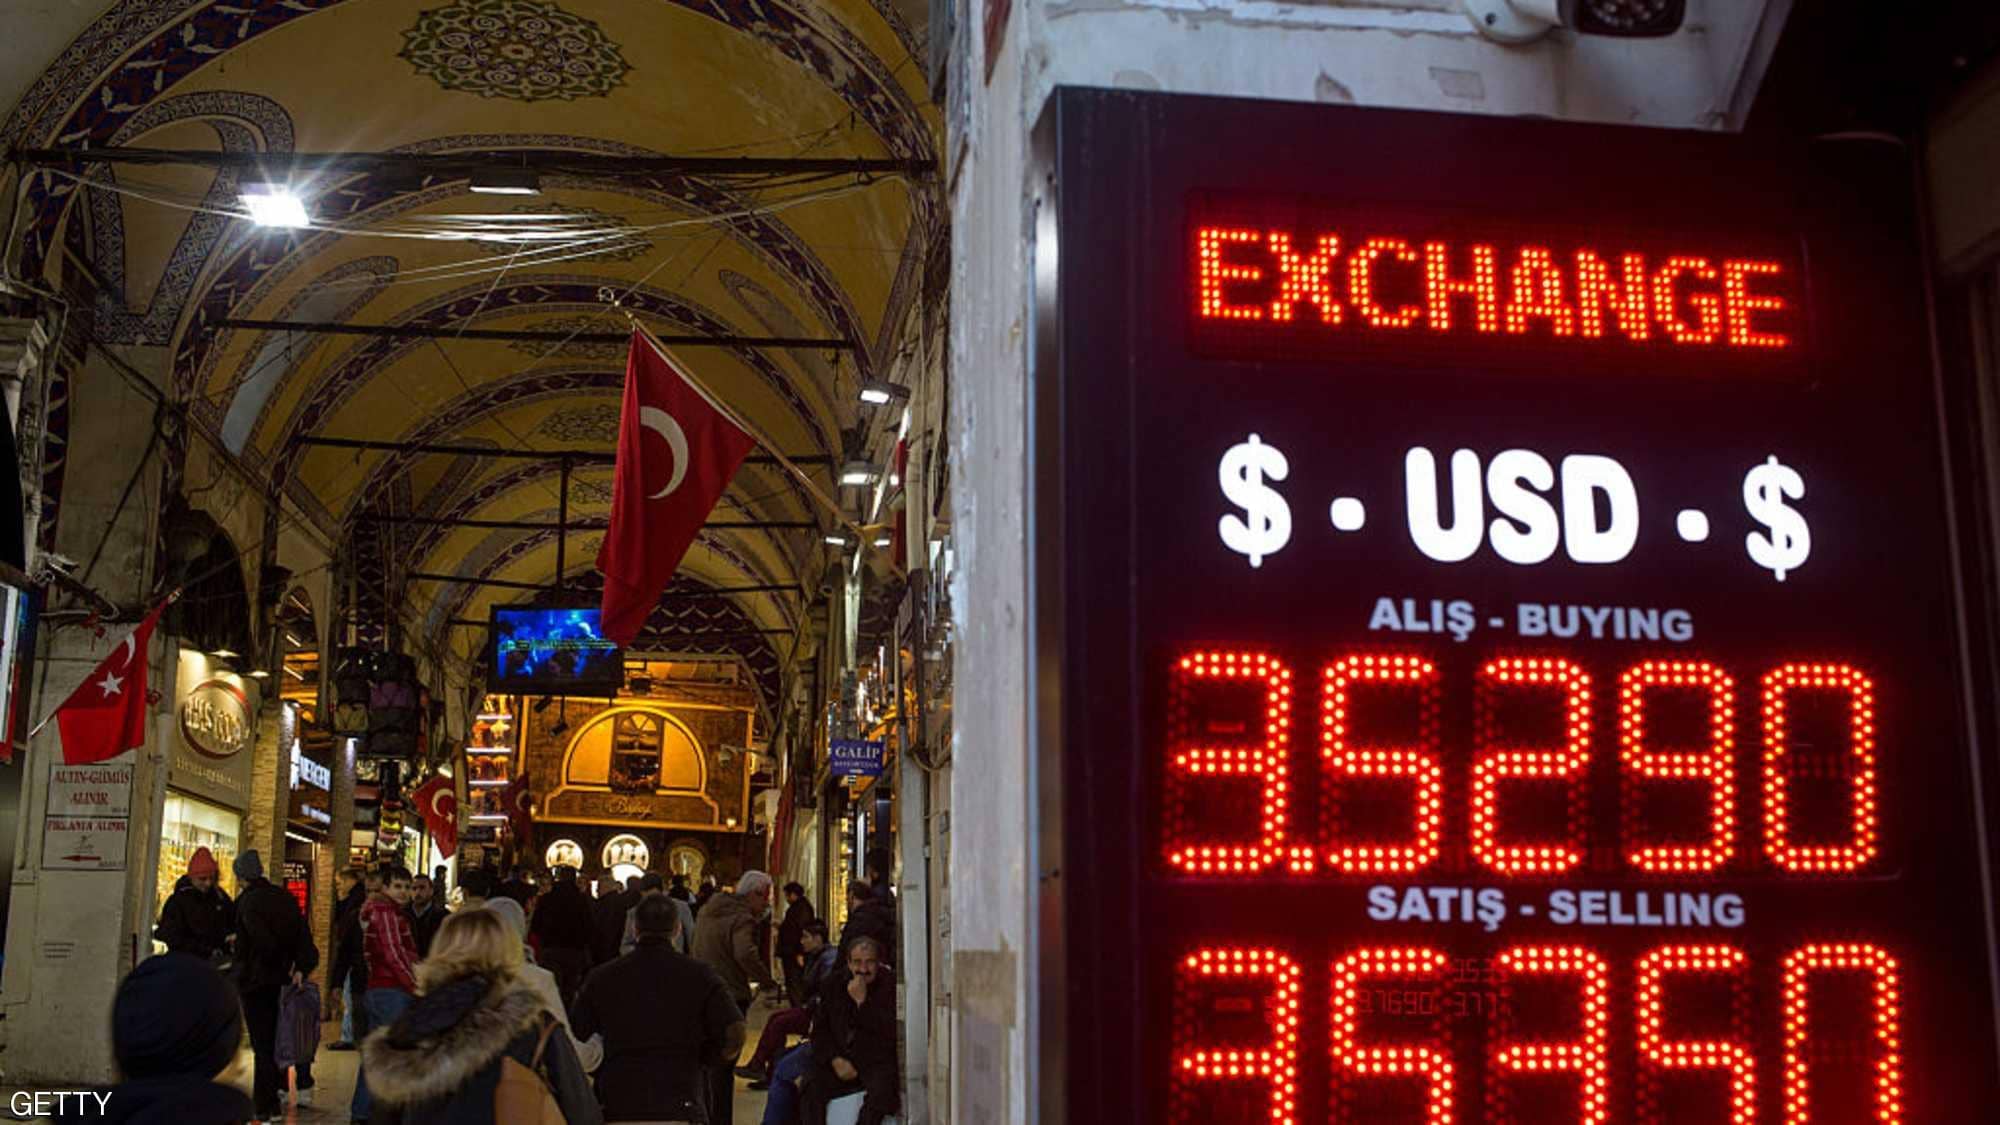 بعد أزمات الاقتصاد.. تركيا تستنجد بـ”المستثمرين الملائكة”